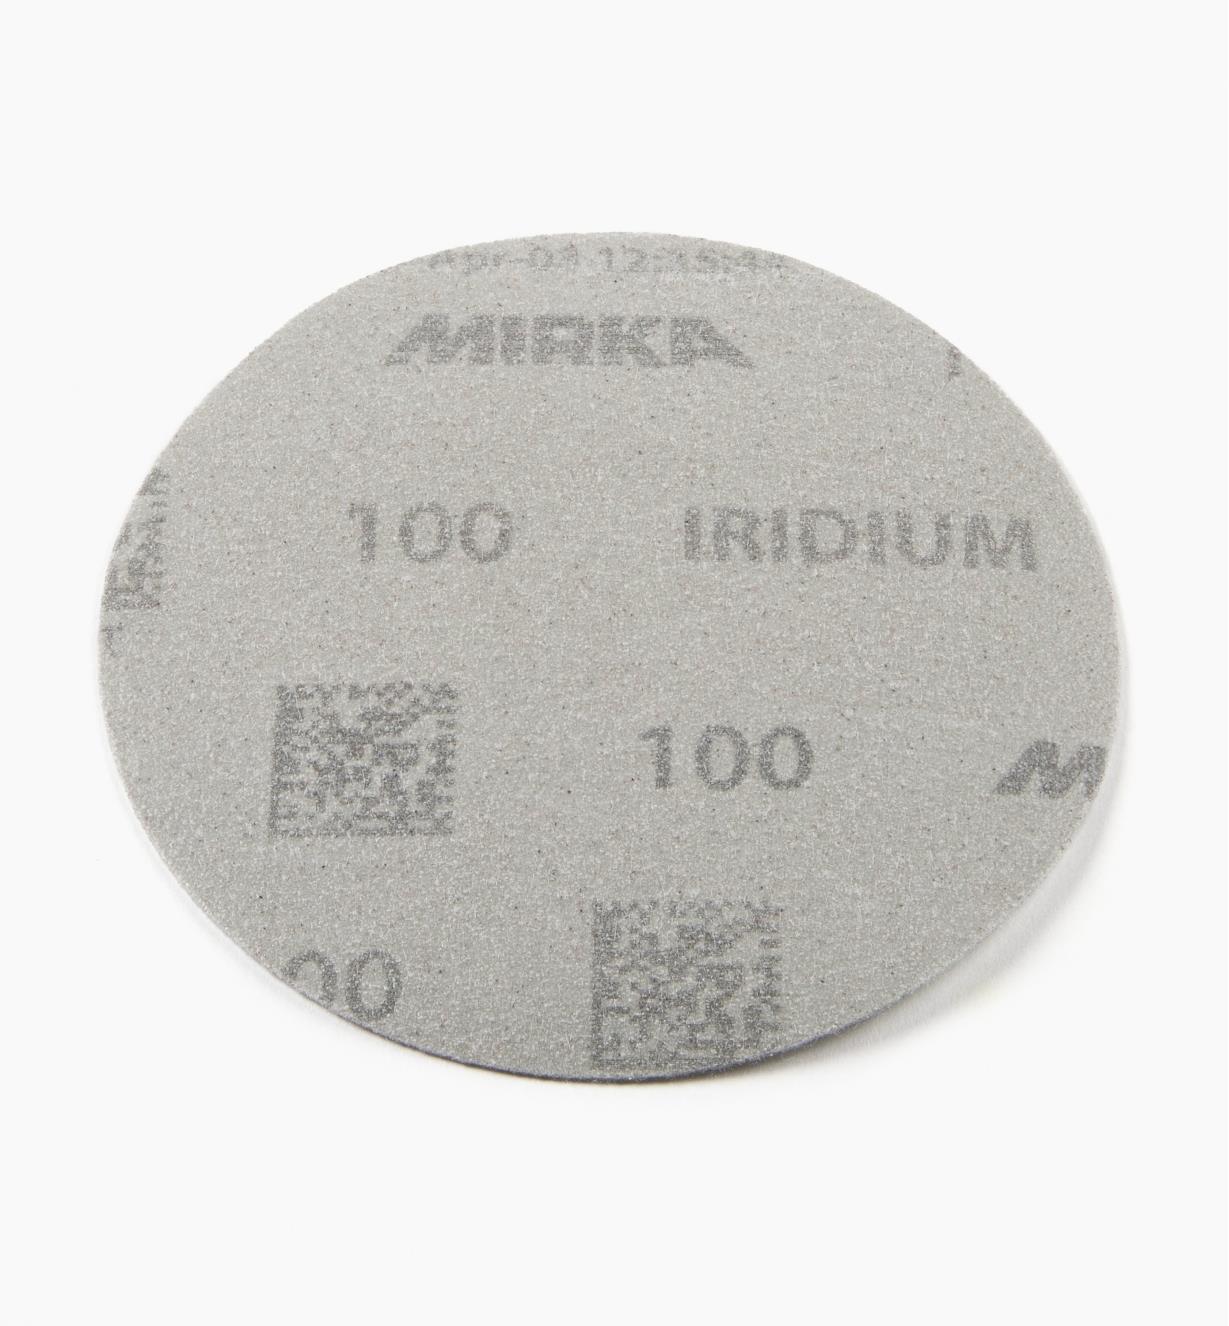 08K0942 - Disque abrasif autoagrippant Iridium, 5 po, sans trous, grain 100, l'unité